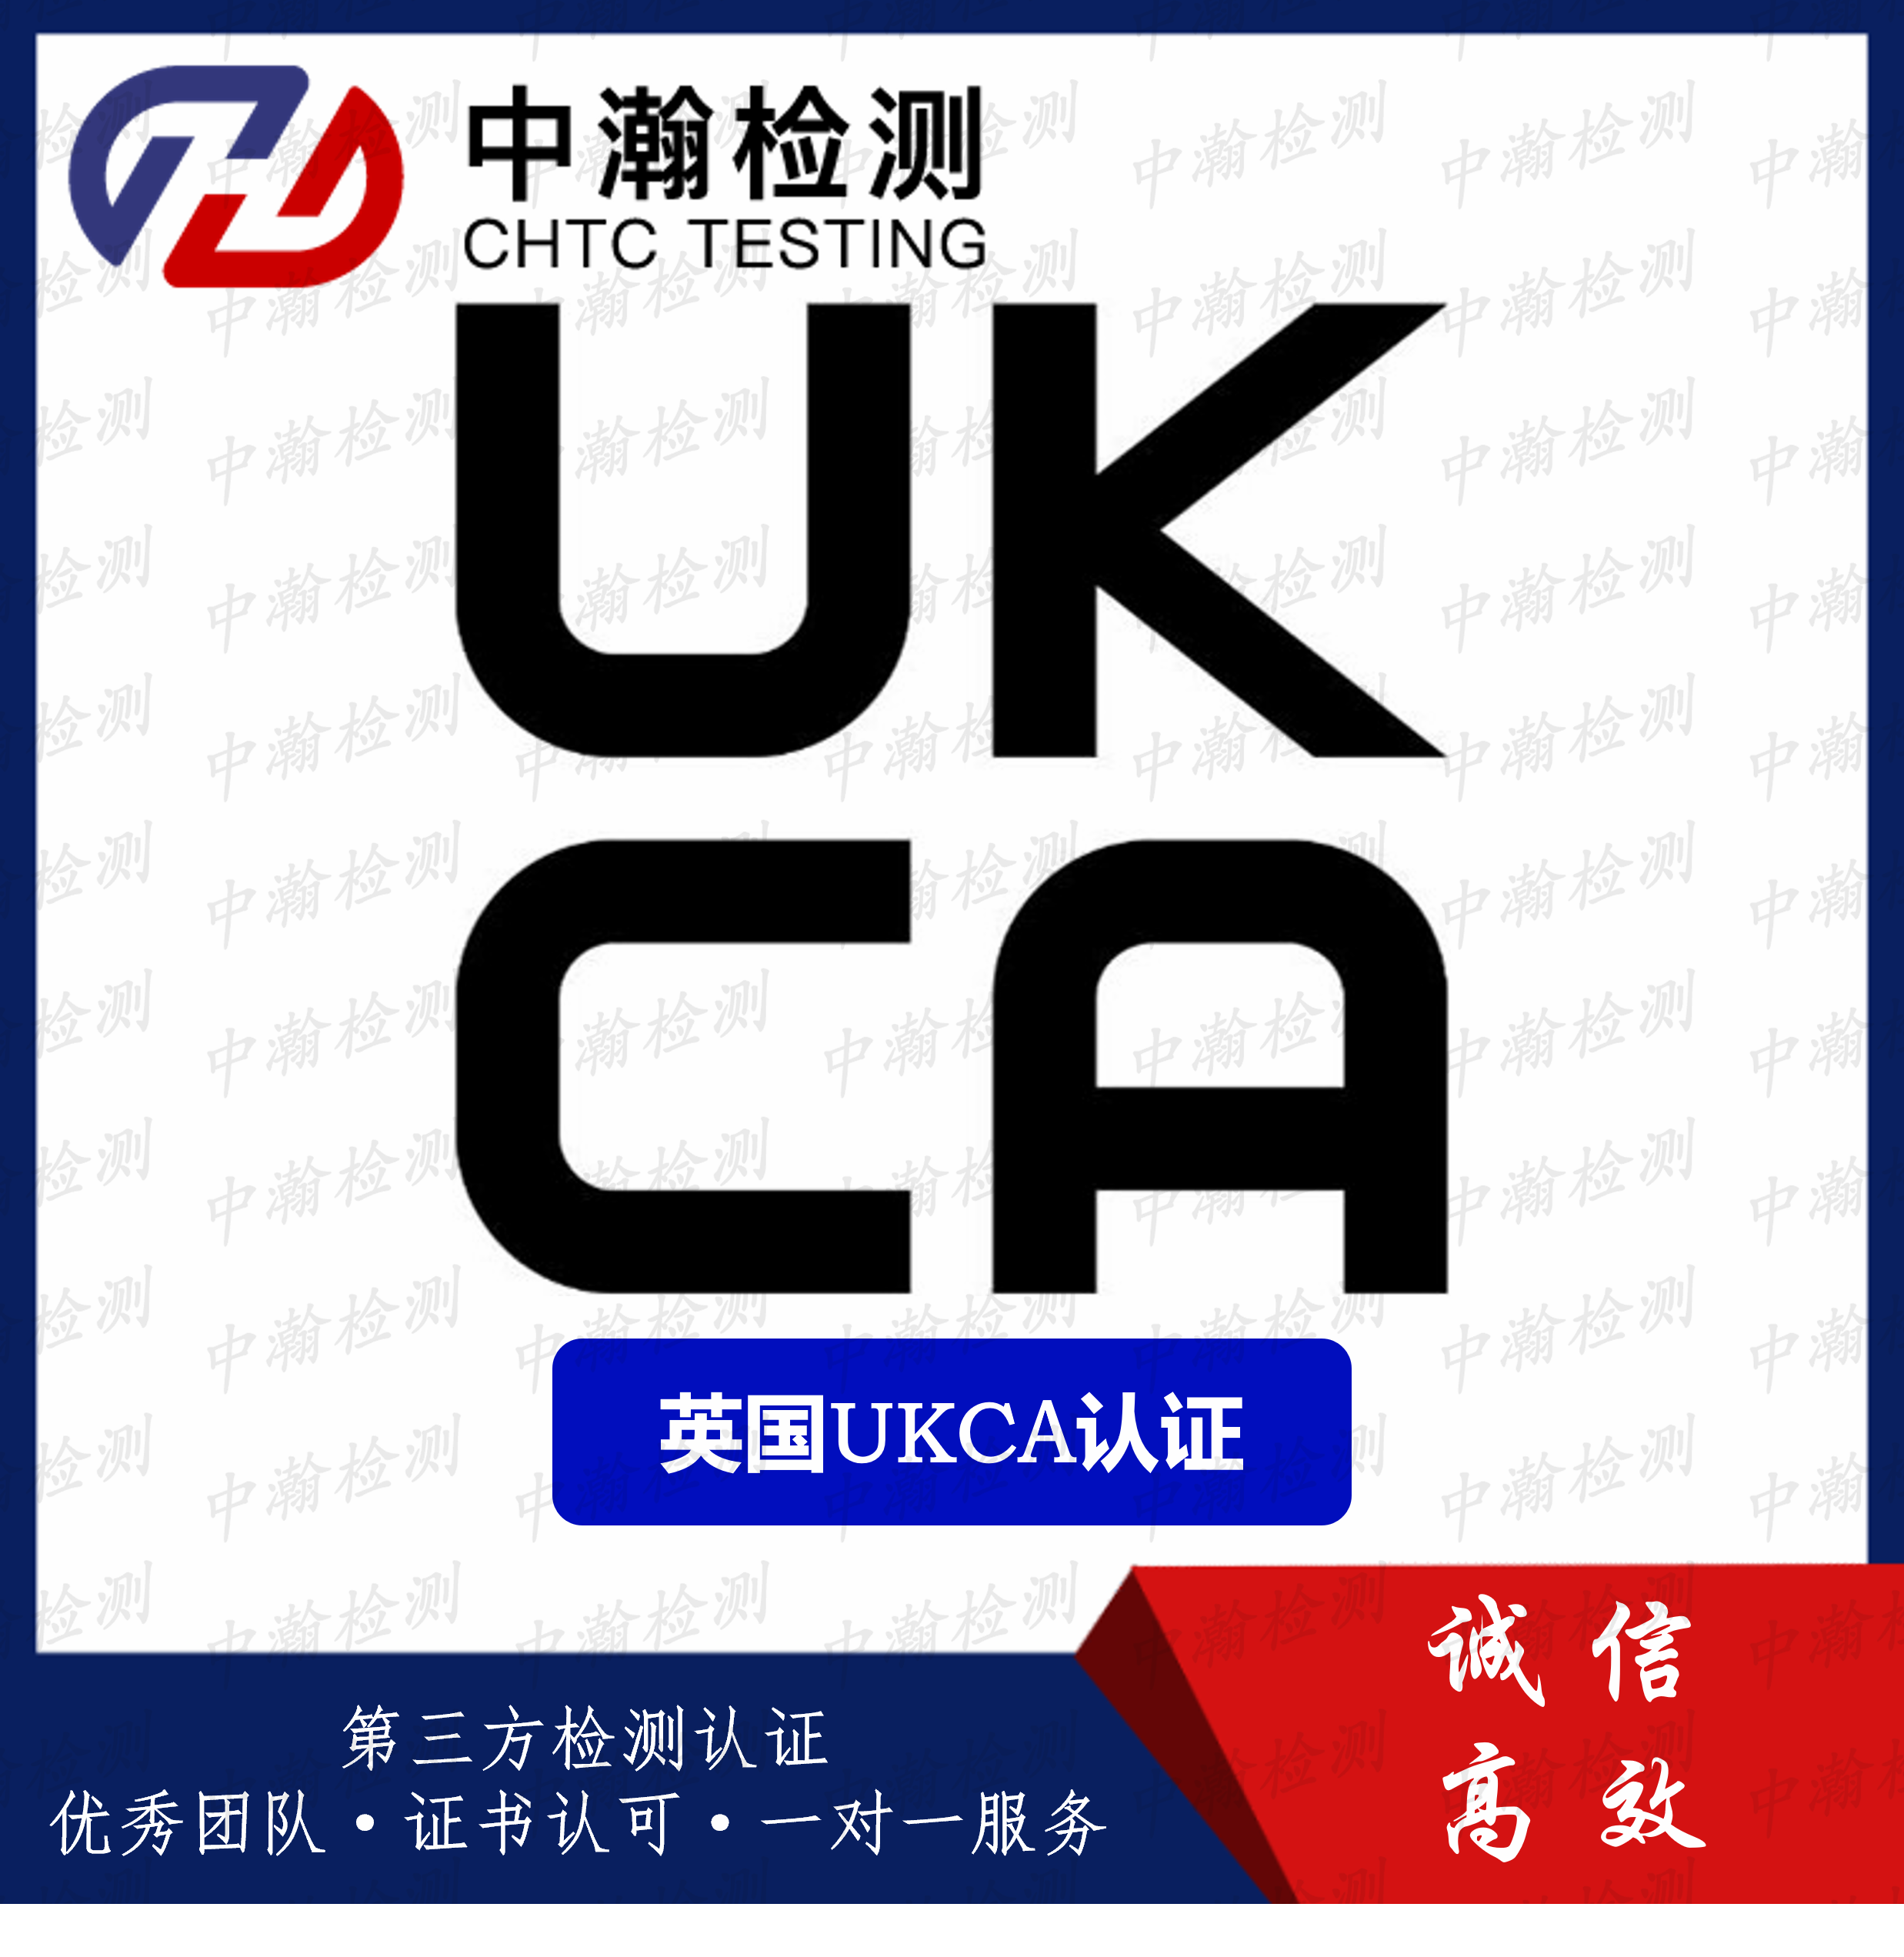 做一个英国UKCA认证流程以及资料